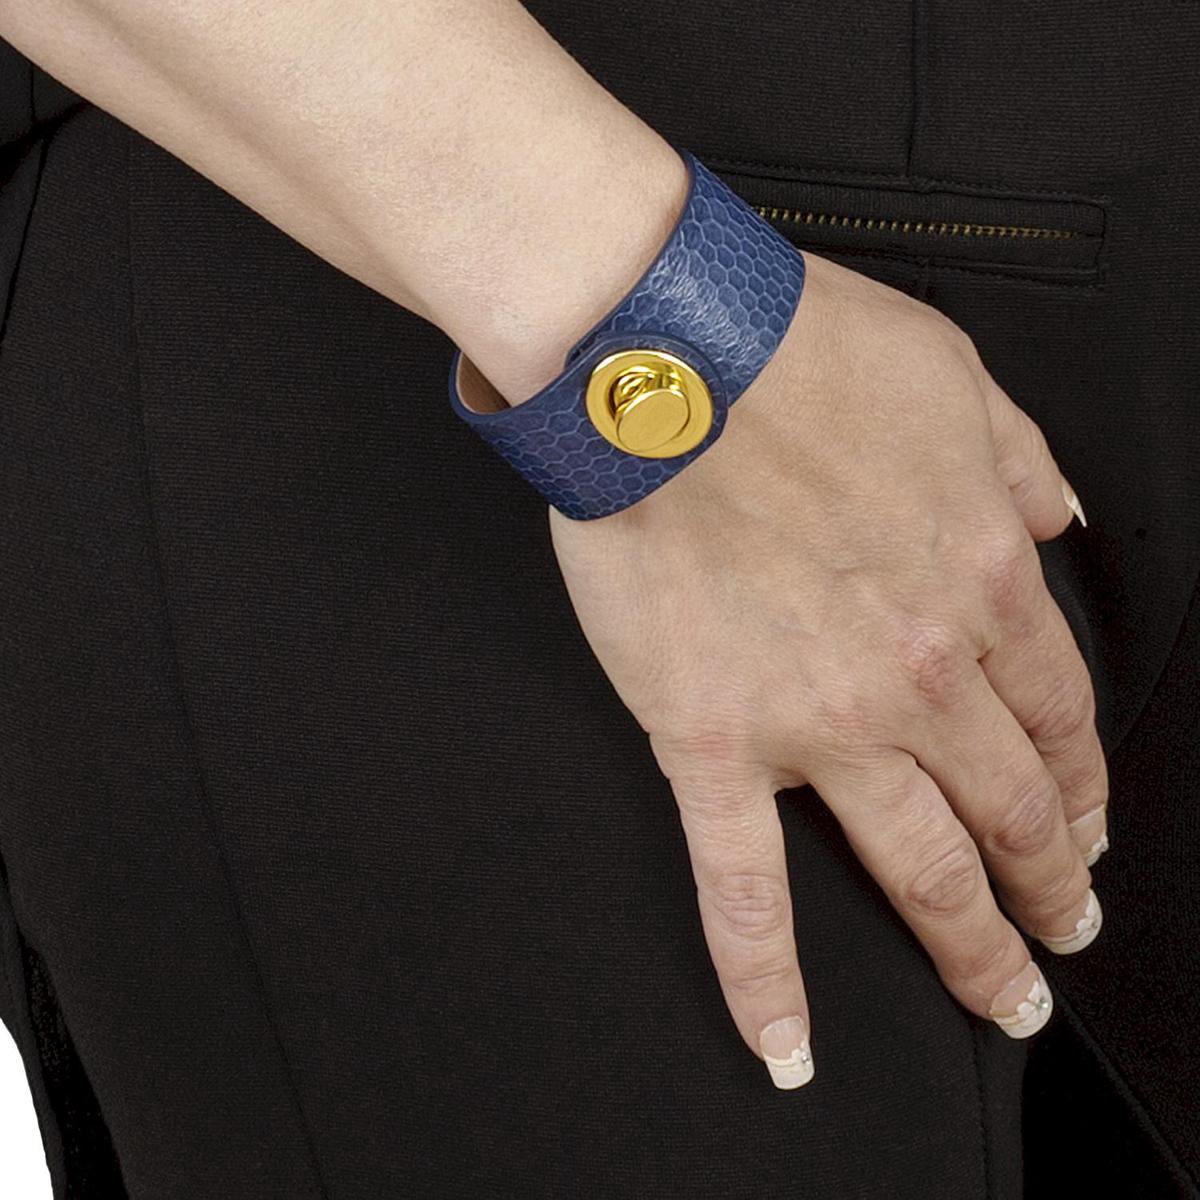 NEW SALE van 74,00 EUR afgeprijsd, BELUCIA dames armband LK-03 kalfsleer shiny blauw, goudkleurig, maat 17 cm